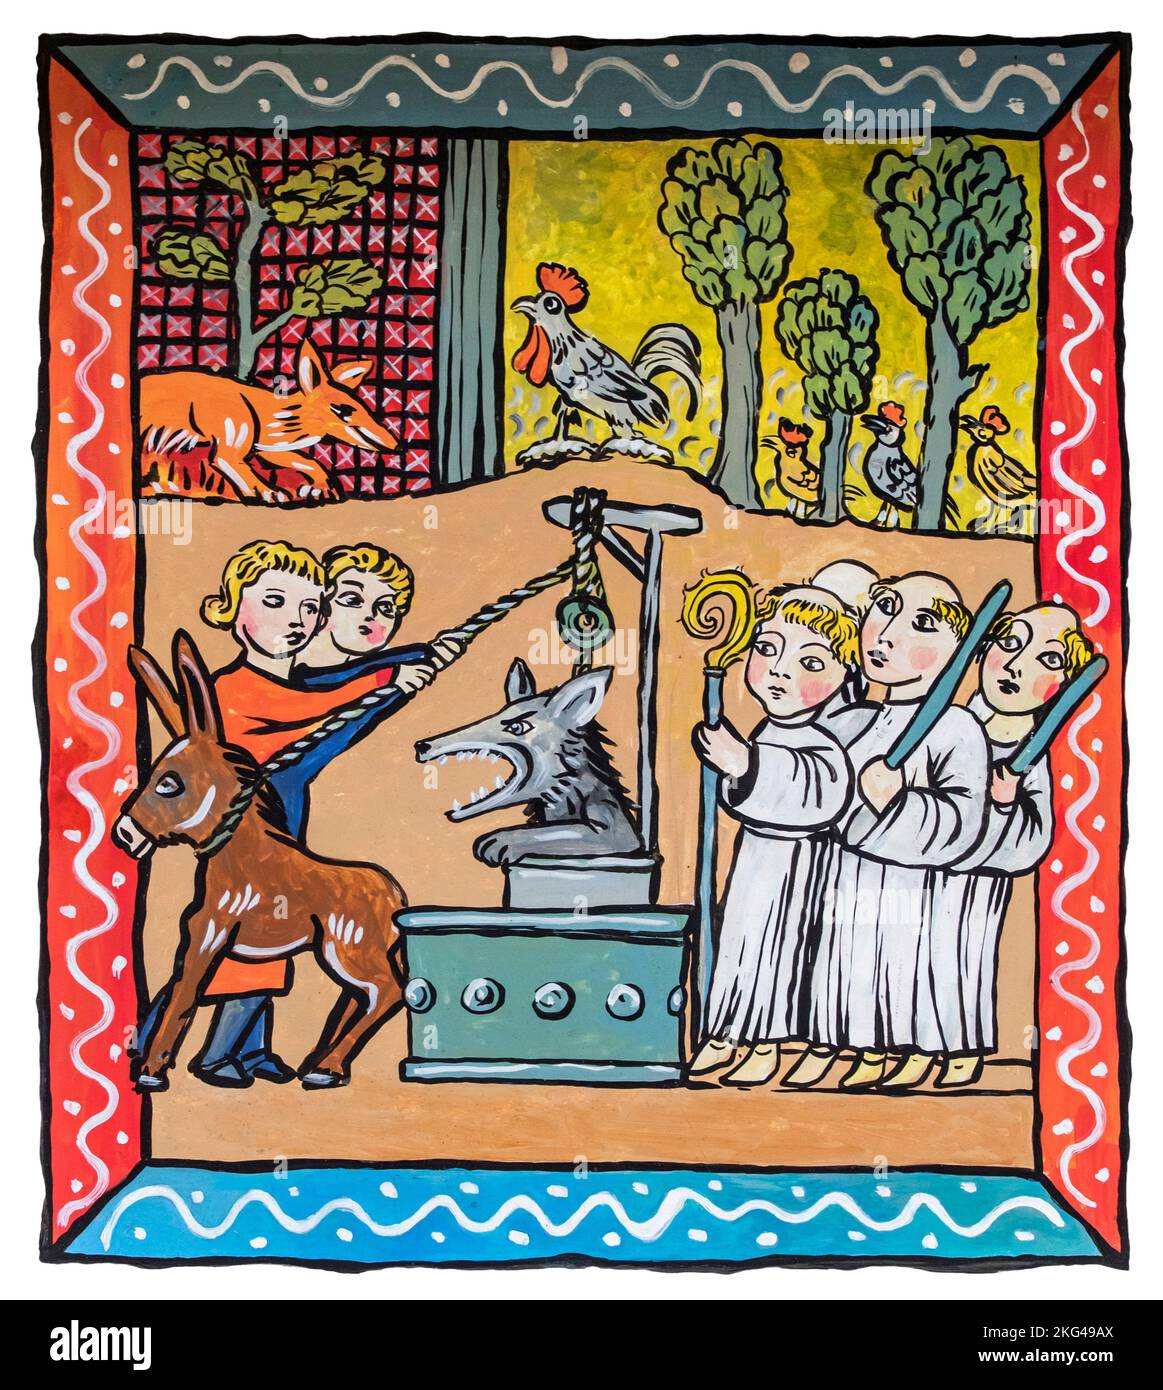 Illustrazione medievale della favola Reynard The Fox che mostra il lupo Isengrarim / Ysengrarim in un pozzo d'acqua Foto Stock